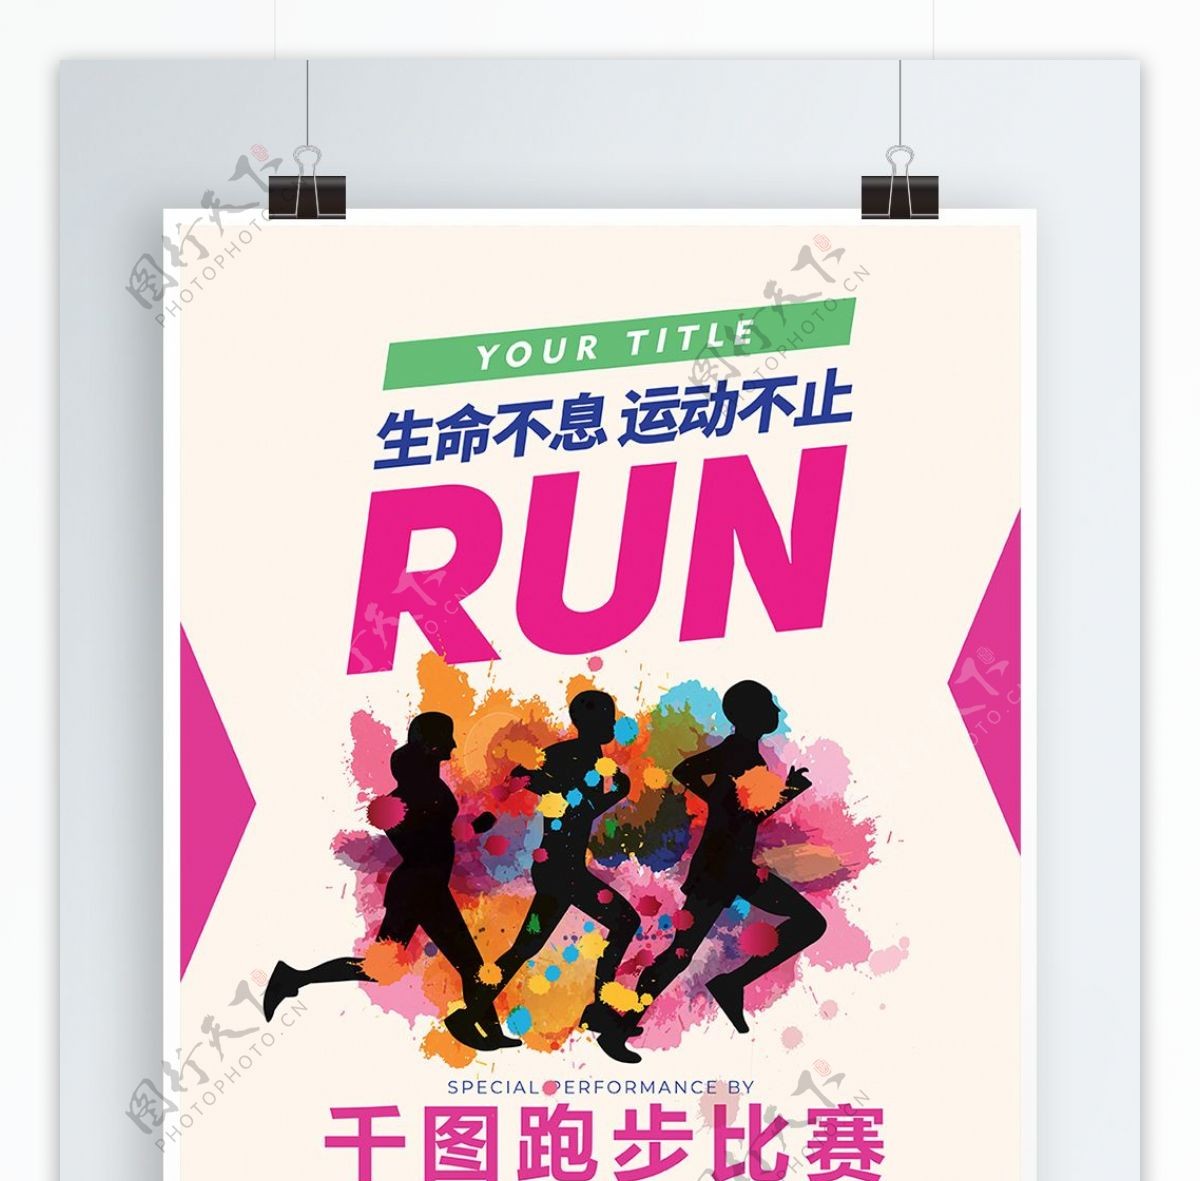 跑步比赛体育运动海报psd源文件